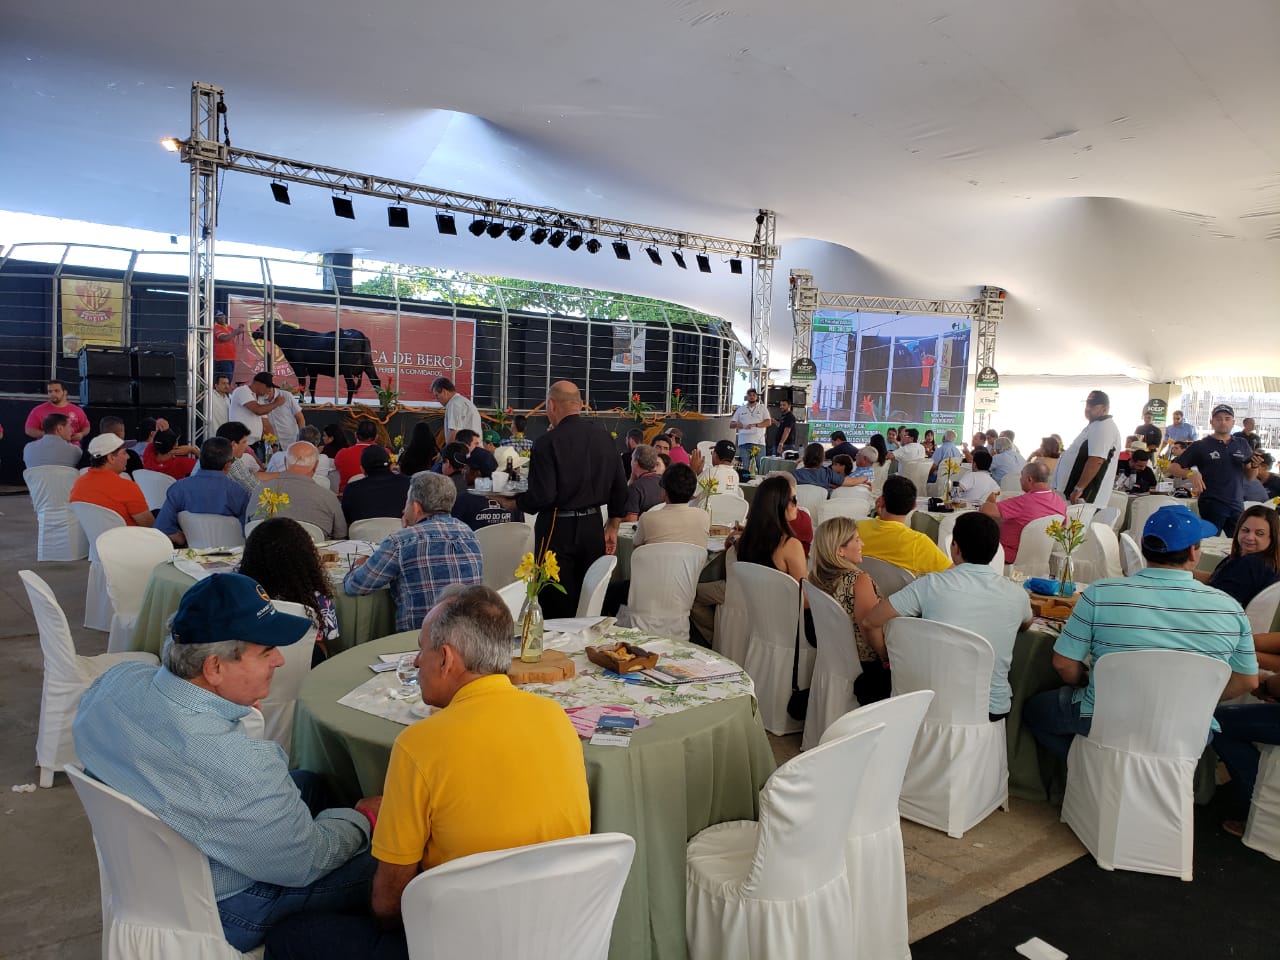 9ª Expoalagoas Genética fatura R$ 2,5 milhões e coloca Alagoas no topo dos eventos agropecuários